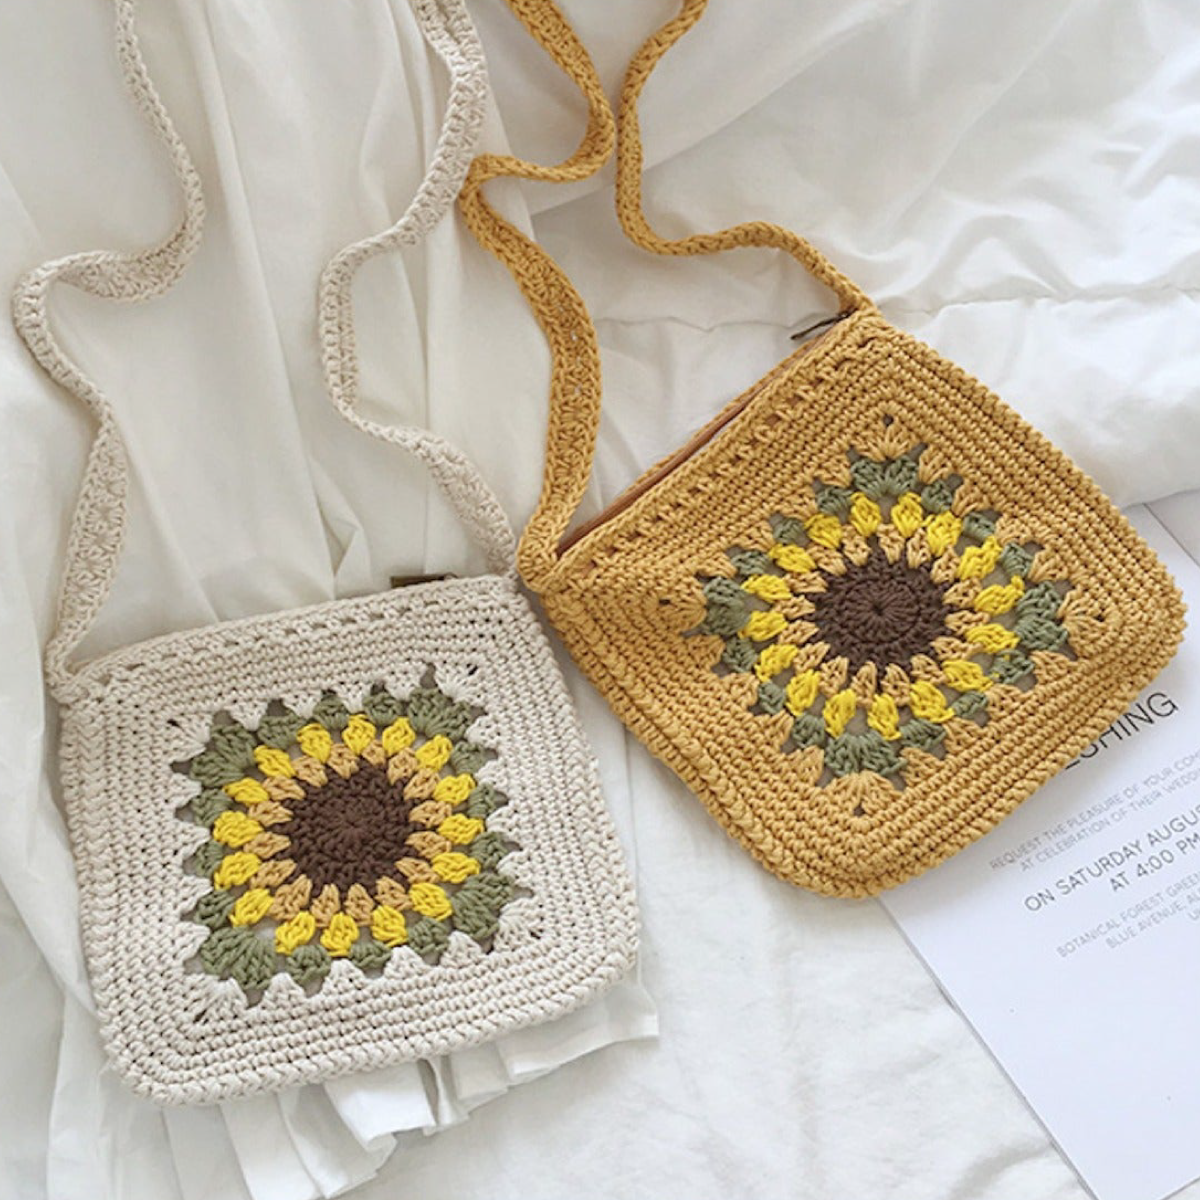 Green Sunflower Crochet Square Crossbody Bag